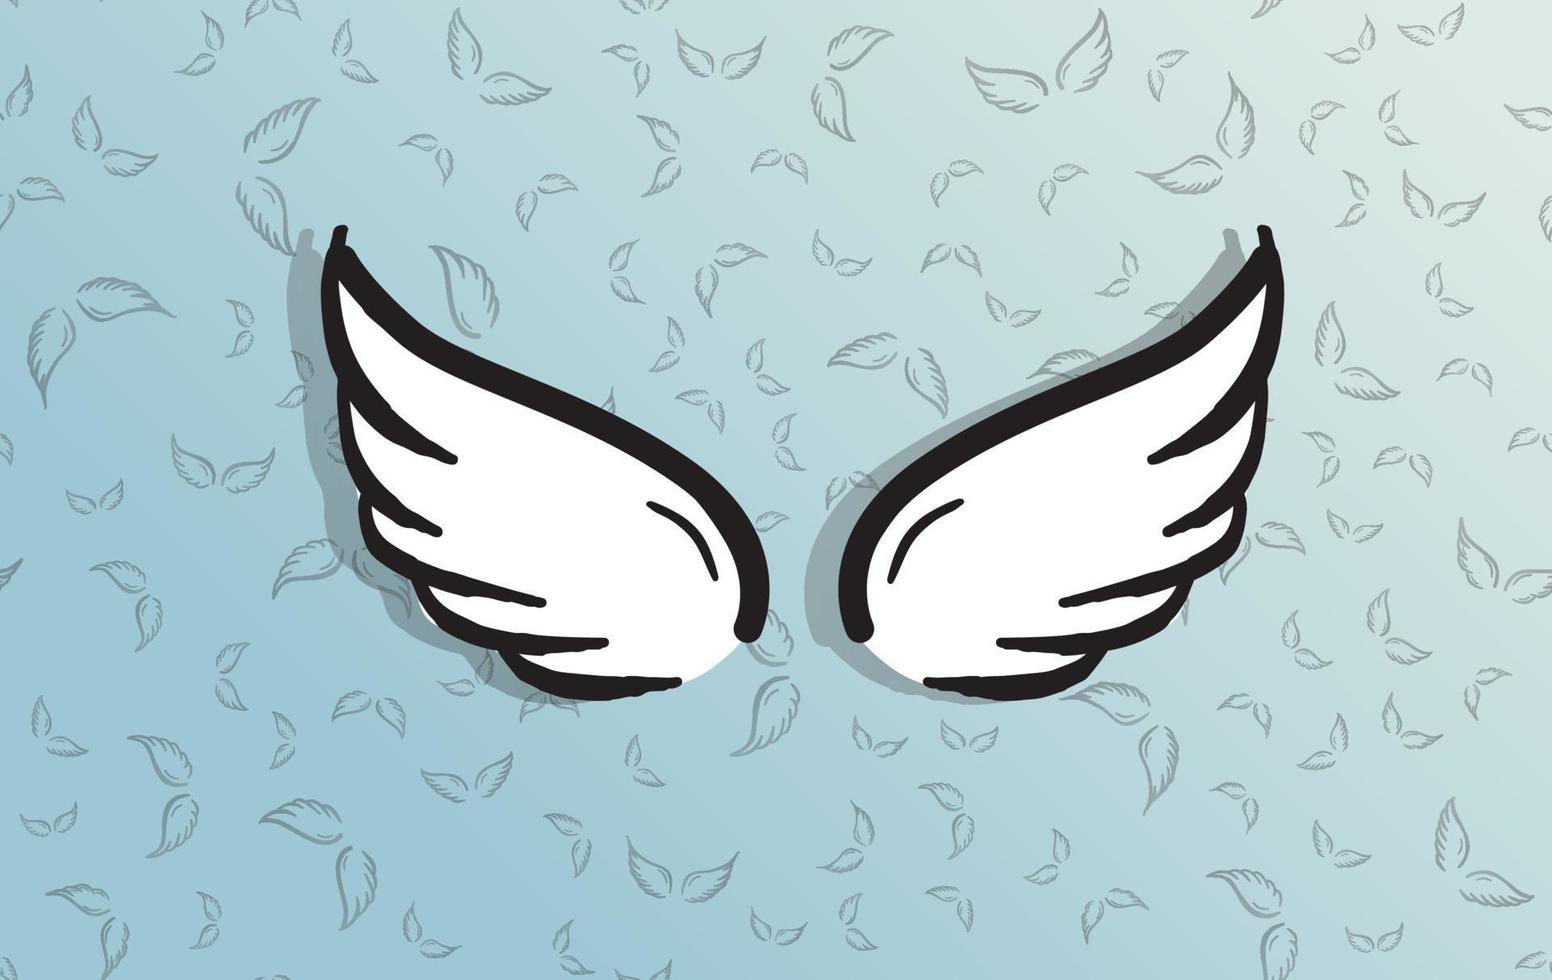 engel vleugels vector hand getekende illustratie